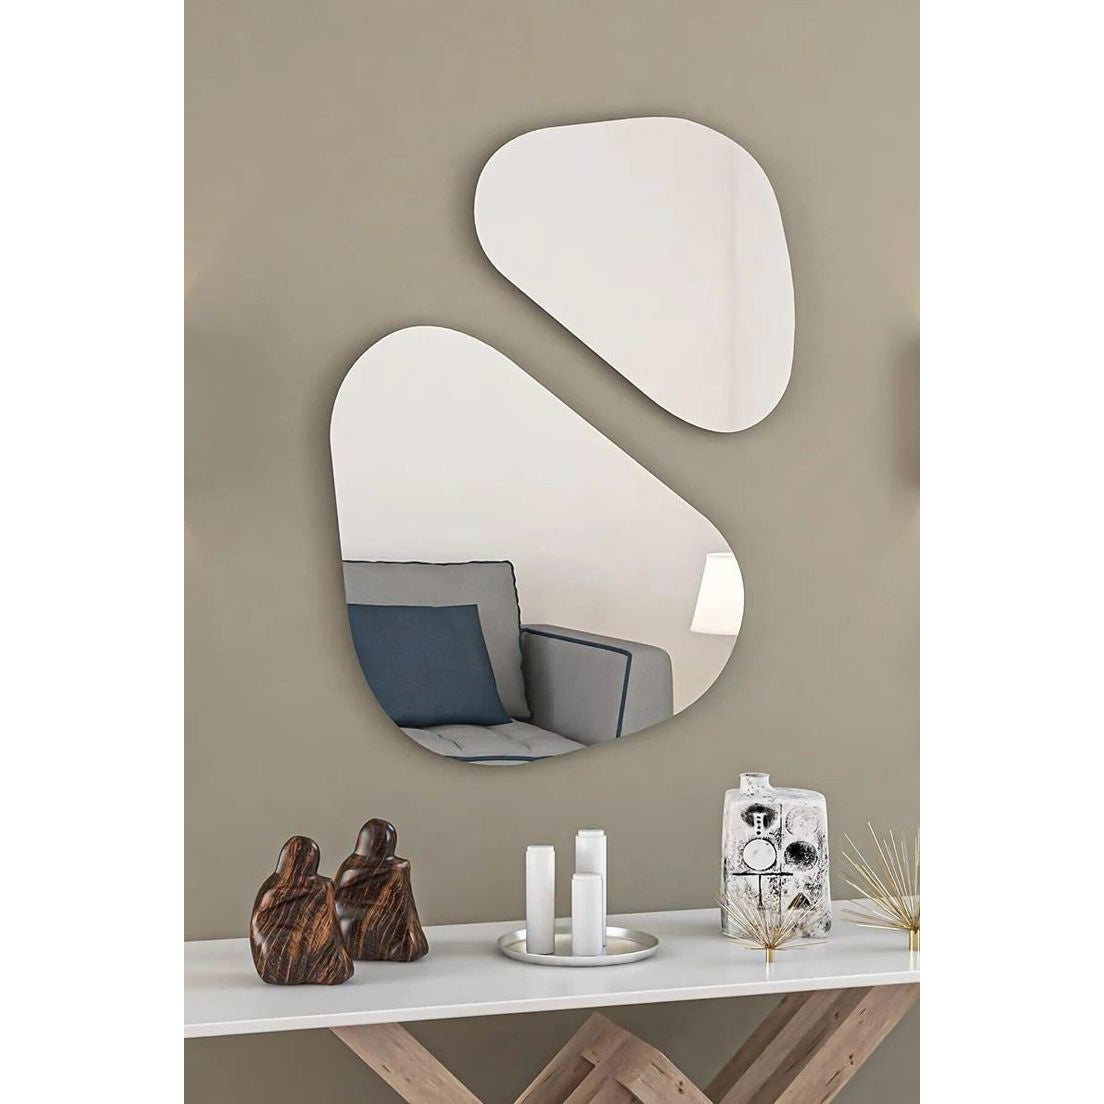 Wall mirror set - 2 pieces - HOS7